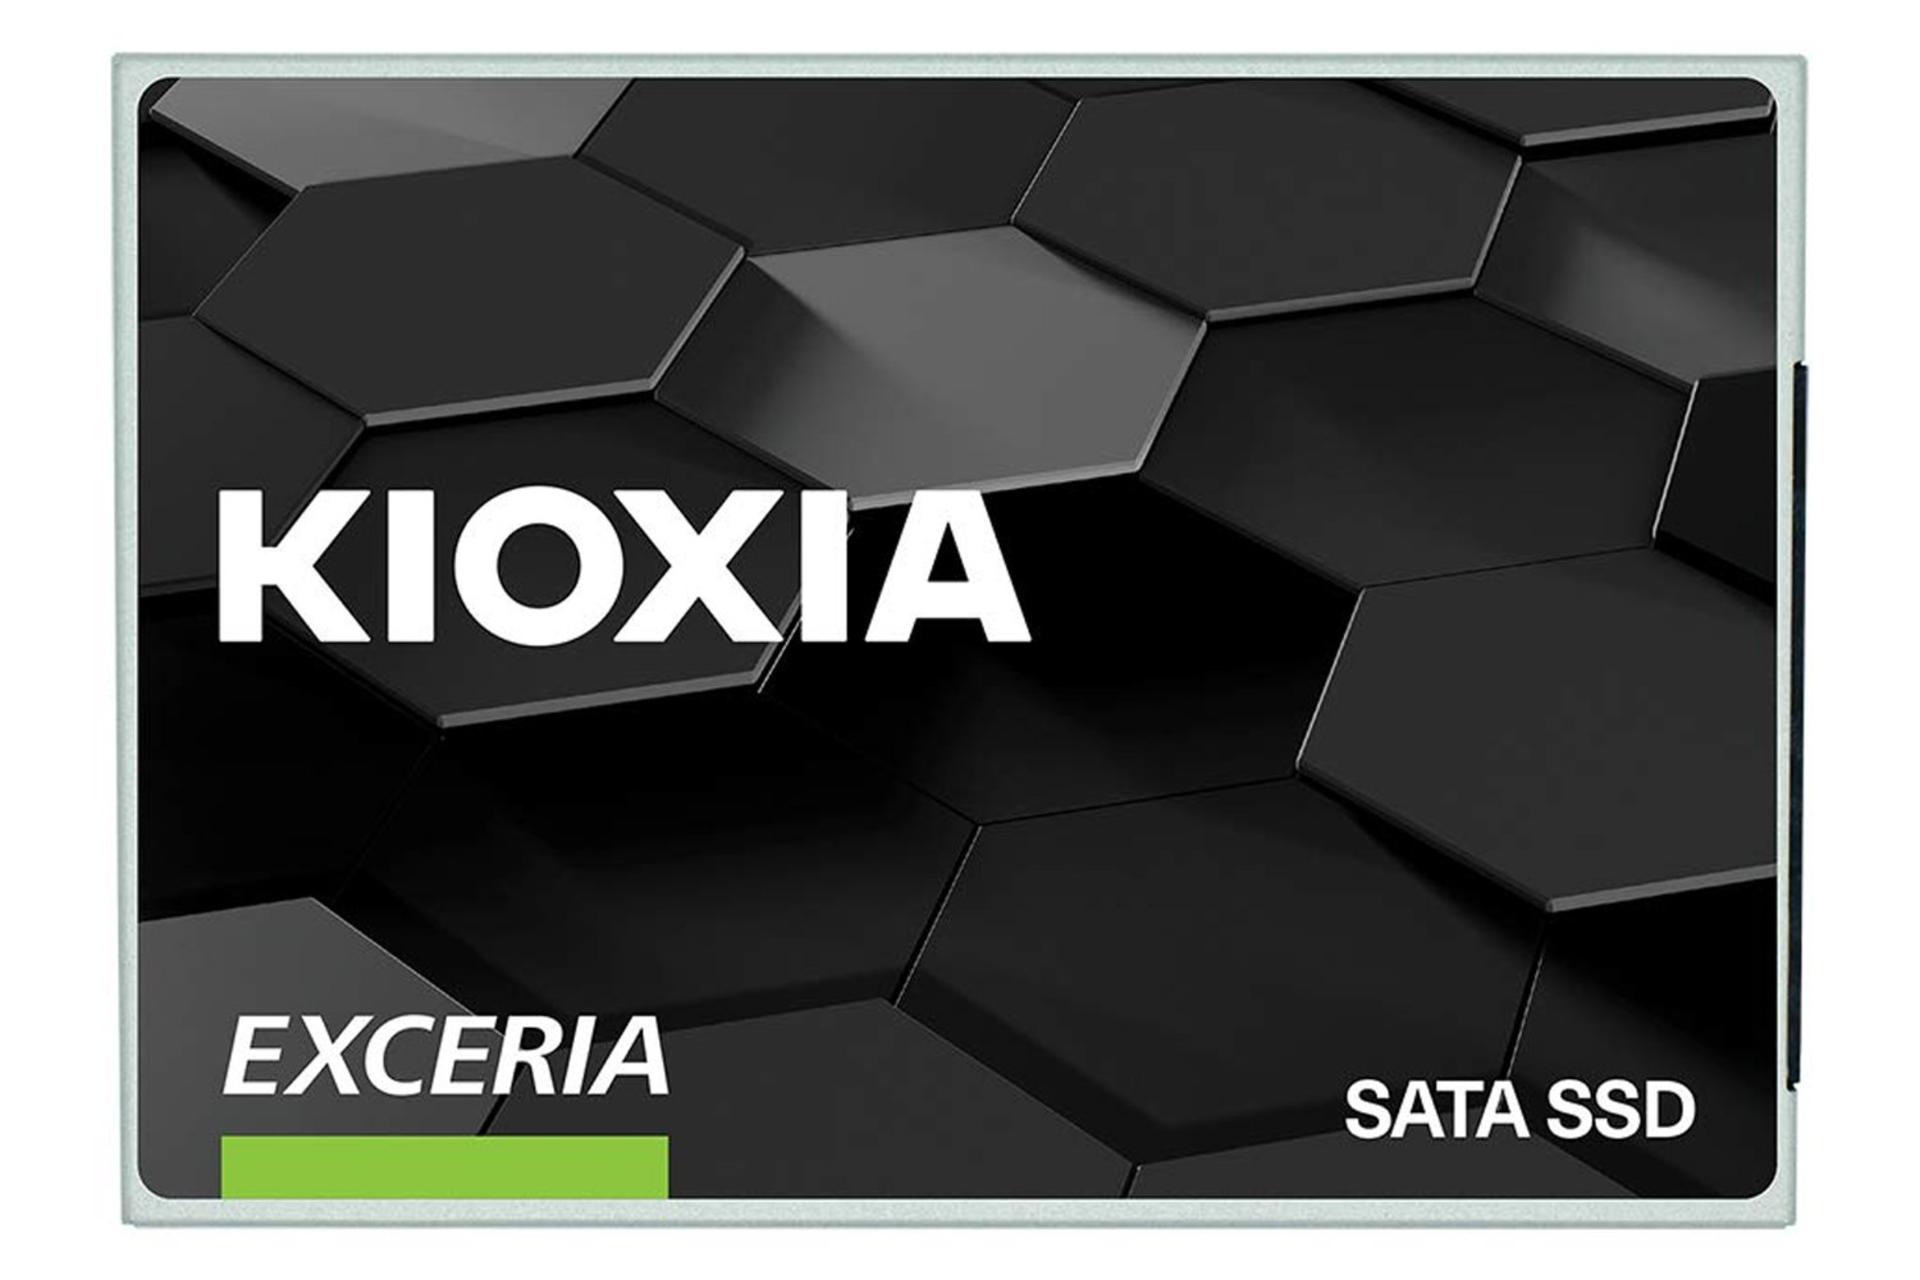 نمای روبروی SSD کیوکسیا EXCERIA SATA 2.5 Inch ظرفیت 960 گیگابایت